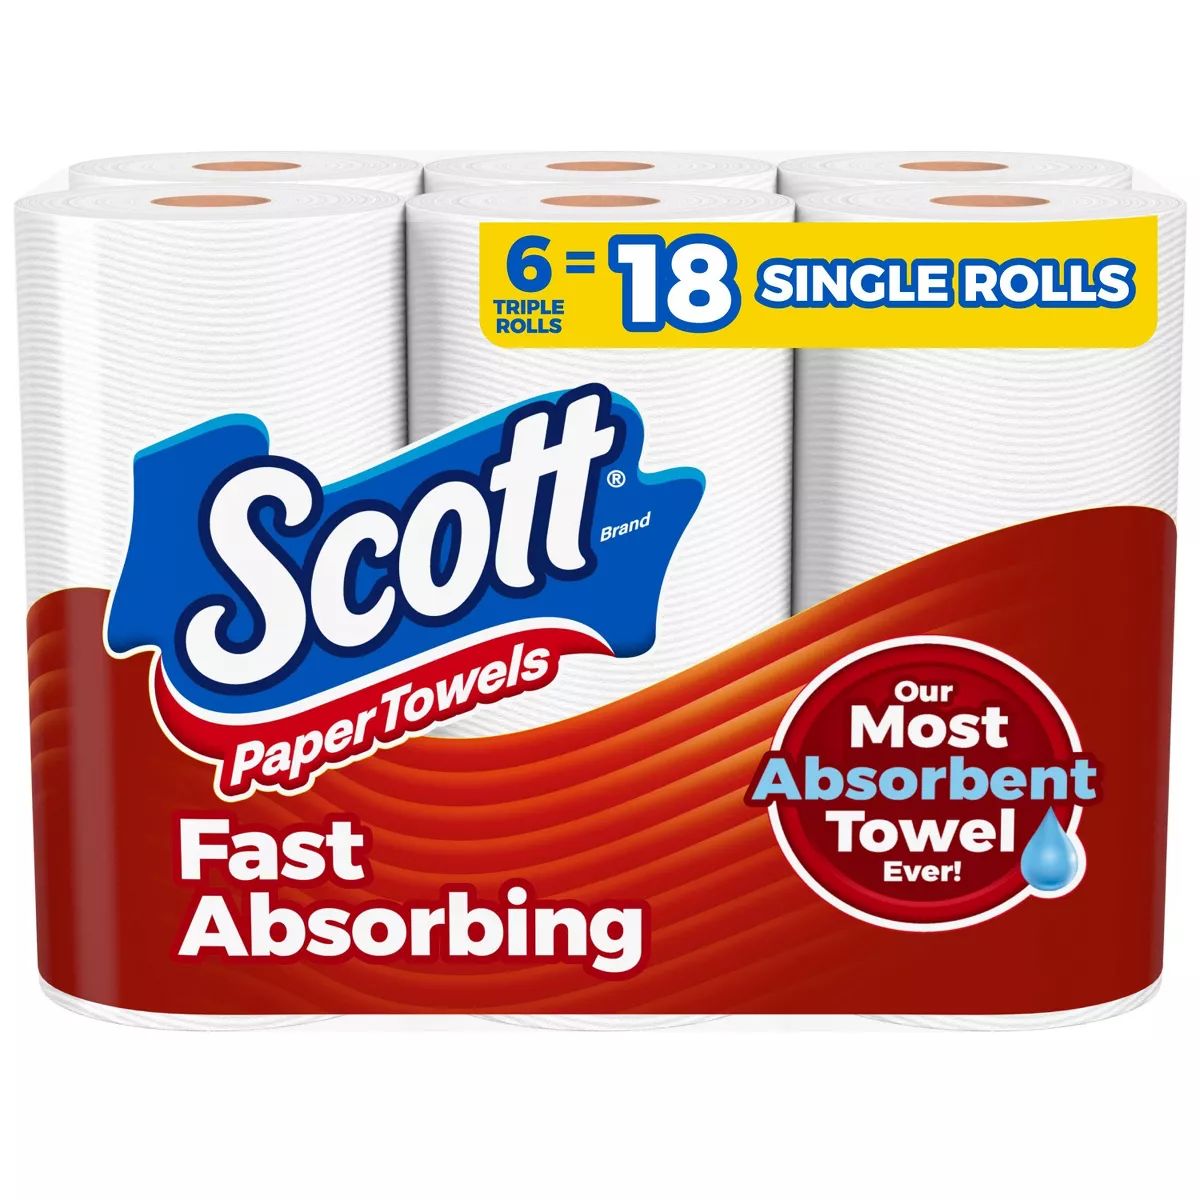 Scott Paper Towels - 6 Triple Rolls | Target